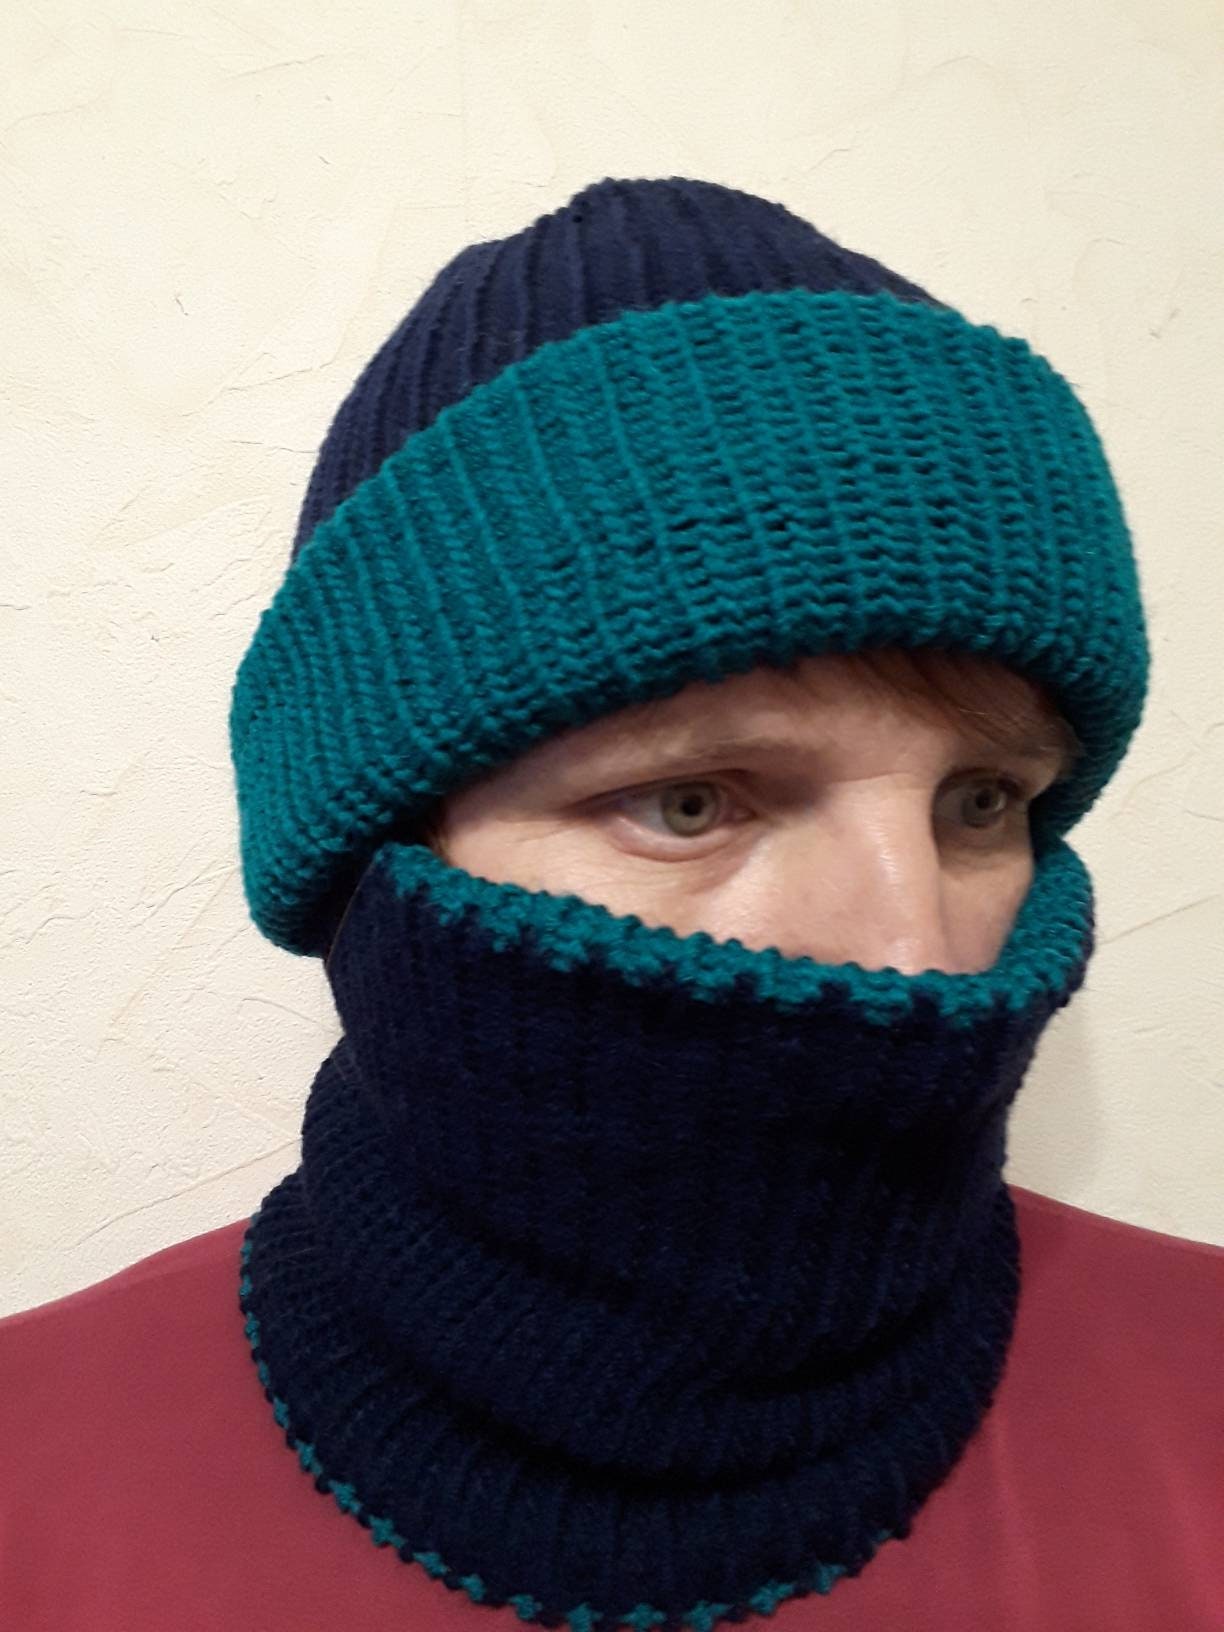 Reversible Knit Wool Blend Winter Balaclava Face Mask Hat & Buff Ski Mask, Motobyke